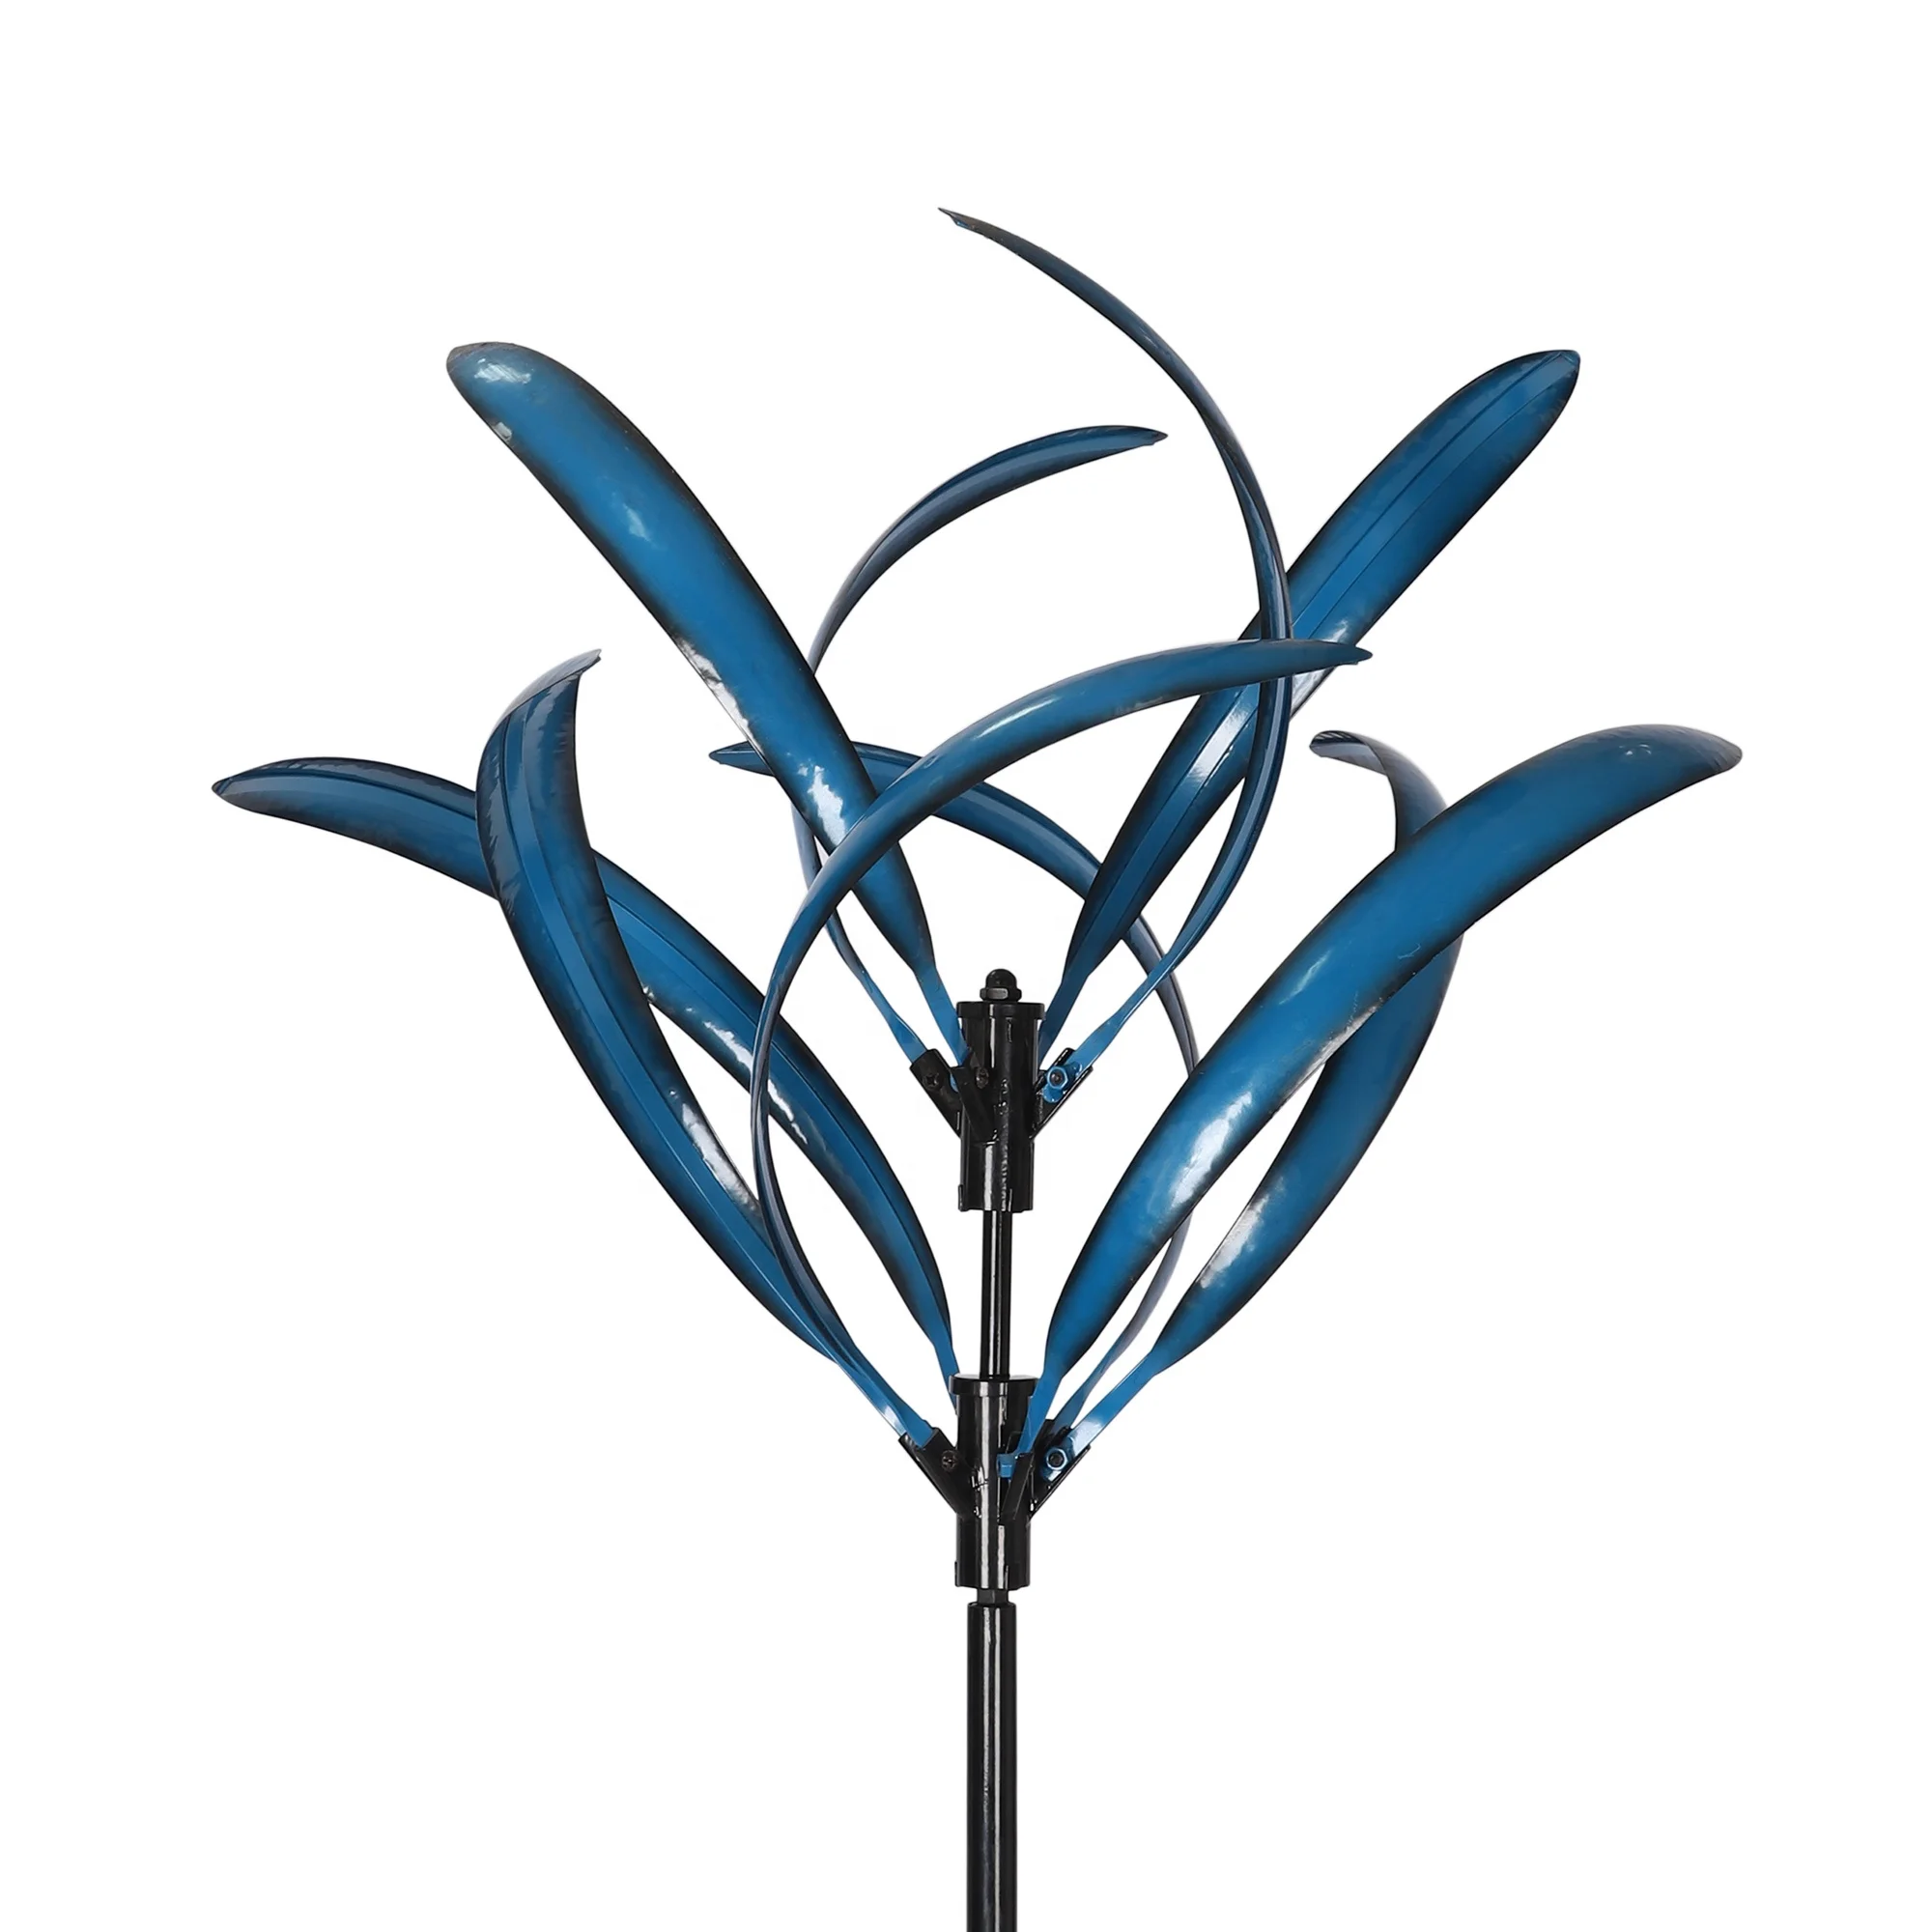 Wind Spinner Manufacturer Garden Ornaments Blue 3D Metal Windmill Garden Wind Spinners